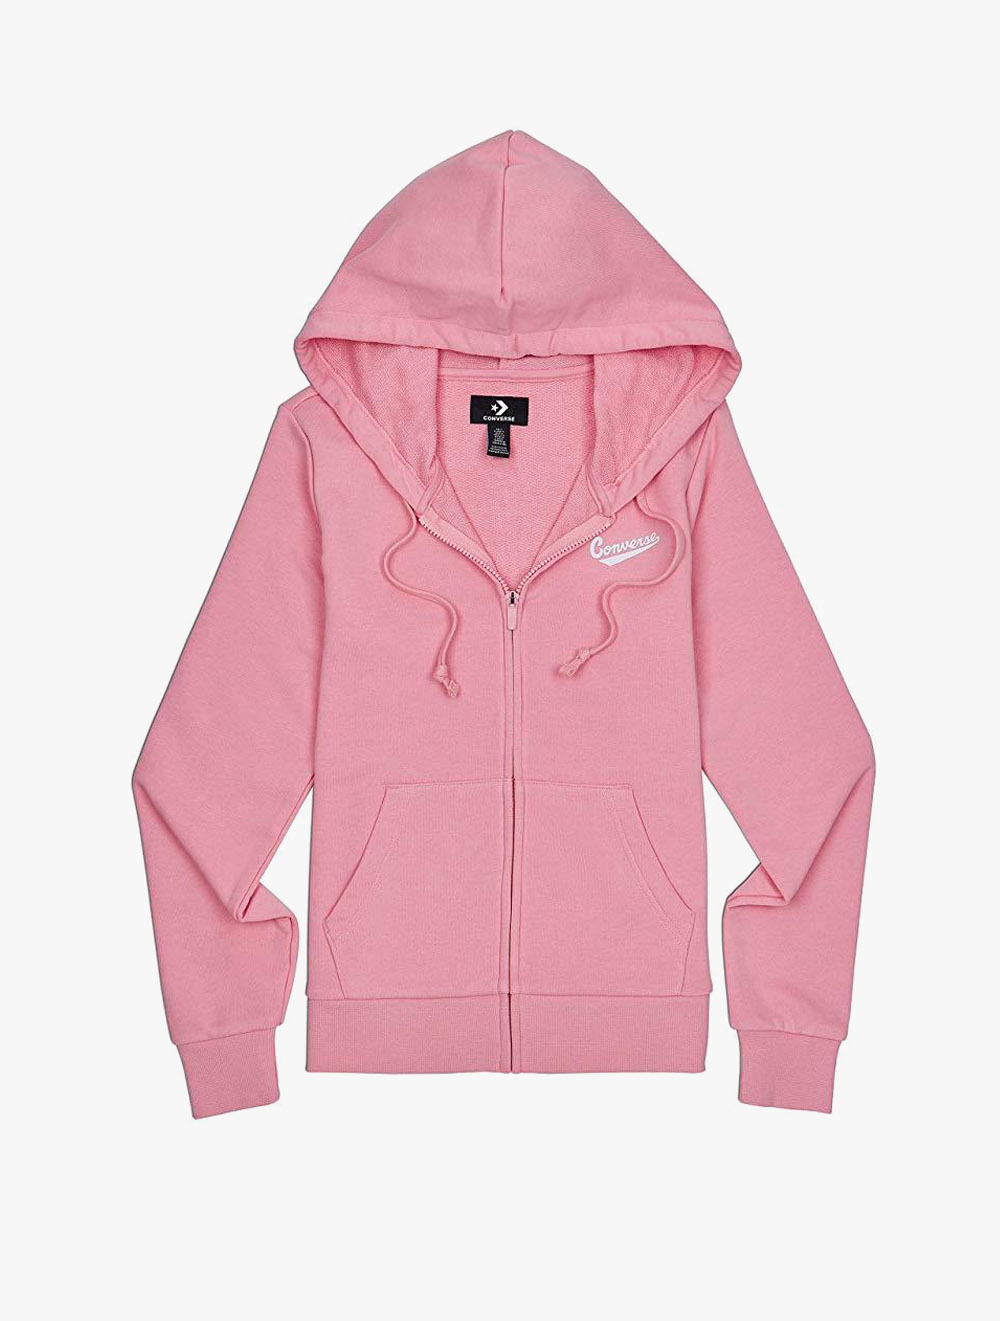 womens pink converse hoodie